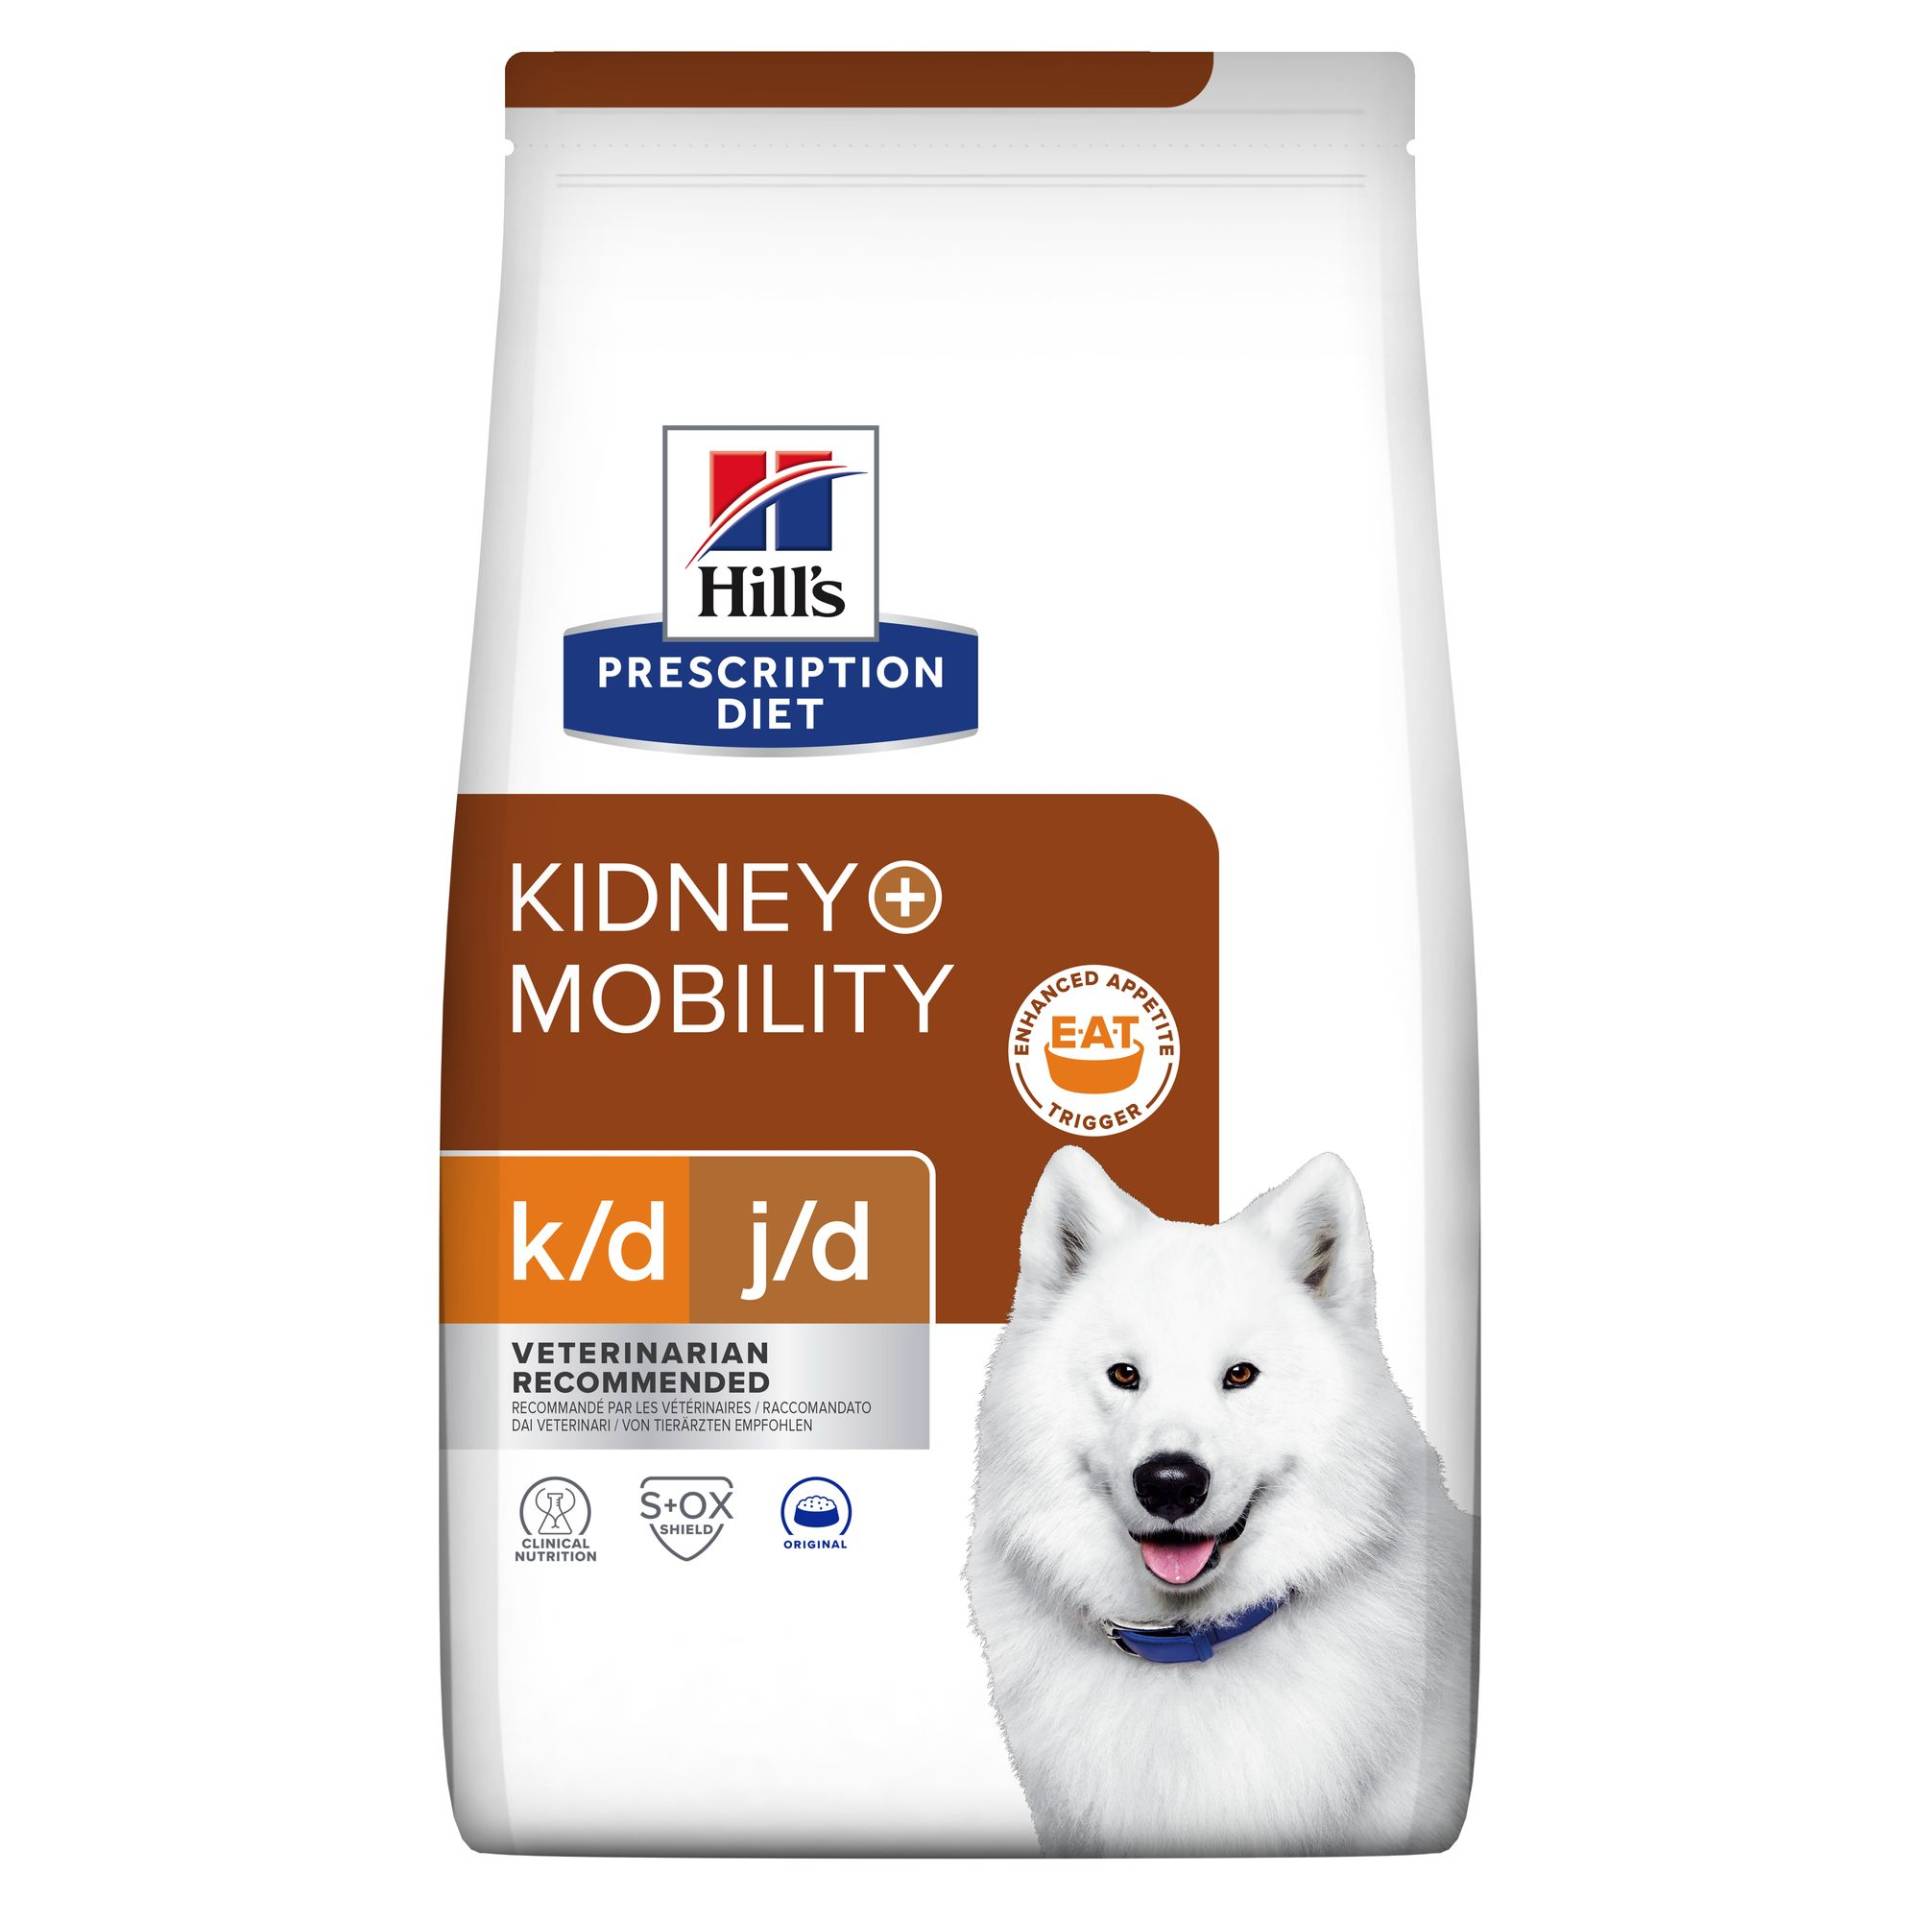 Hill's Prescription Diet k/d + Mobility - Canine - 4 kg von Hills